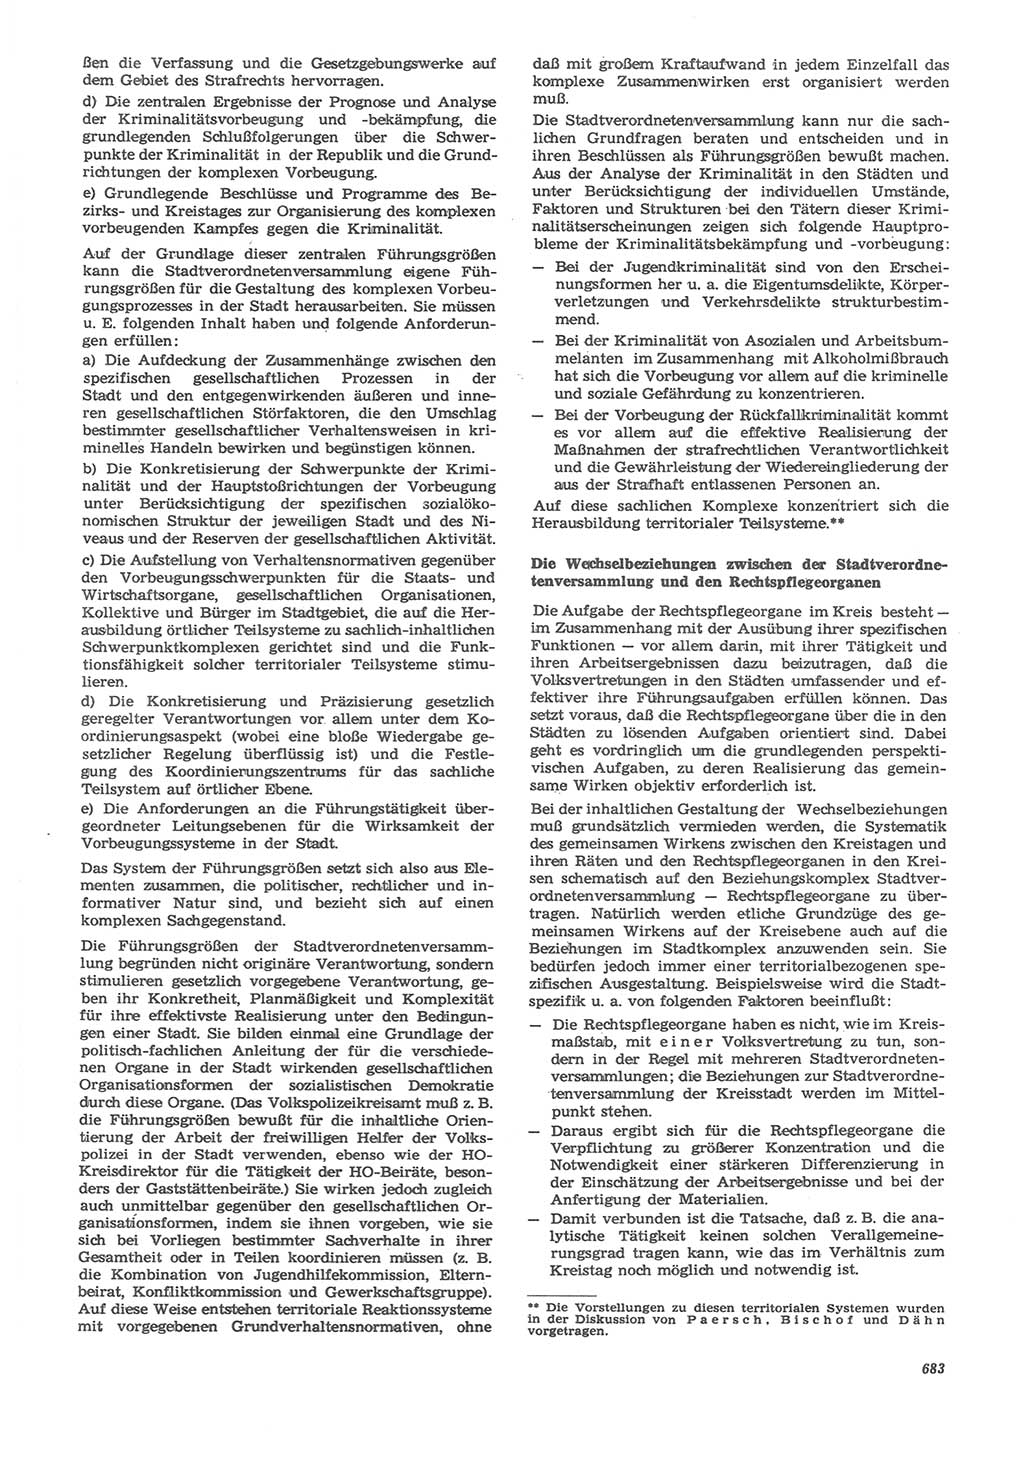 Neue Justiz (NJ), Zeitschrift für Recht und Rechtswissenschaft [Deutsche Demokratische Republik (DDR)], 22. Jahrgang 1968, Seite 683 (NJ DDR 1968, S. 683)